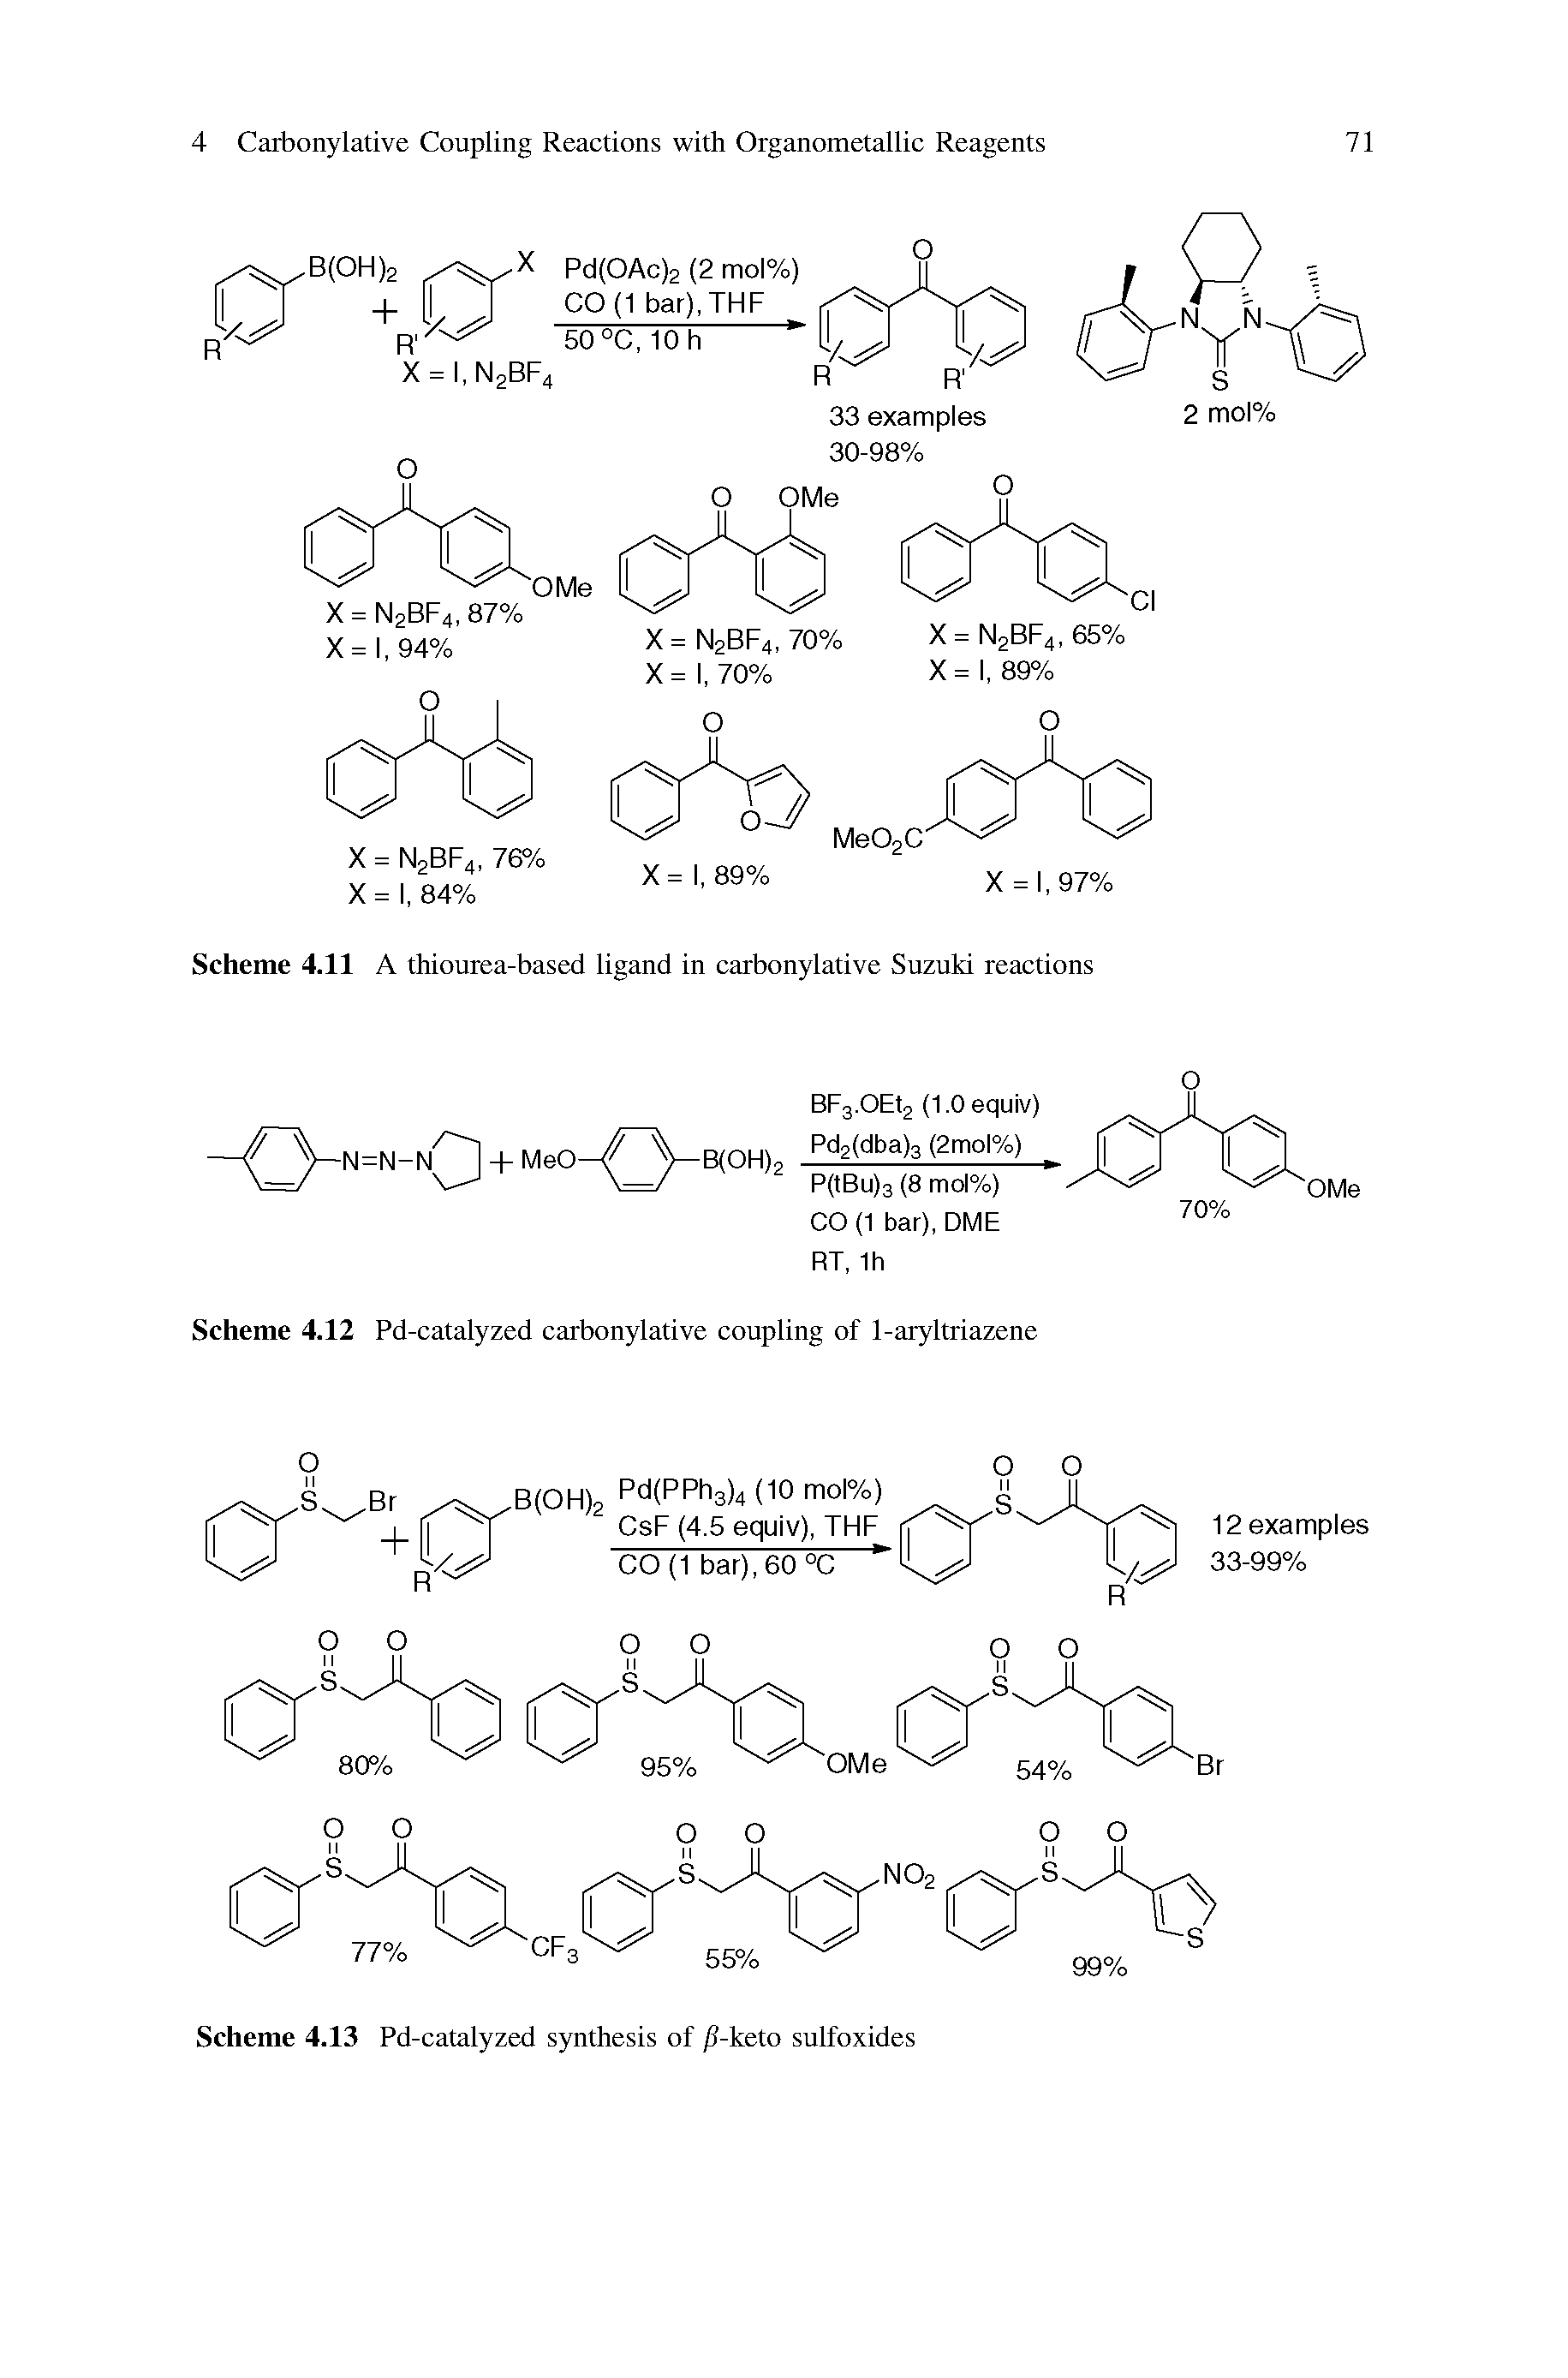 Scheme 4.11 A thiourea-based ligand in carbonylative Suzuki reactions...